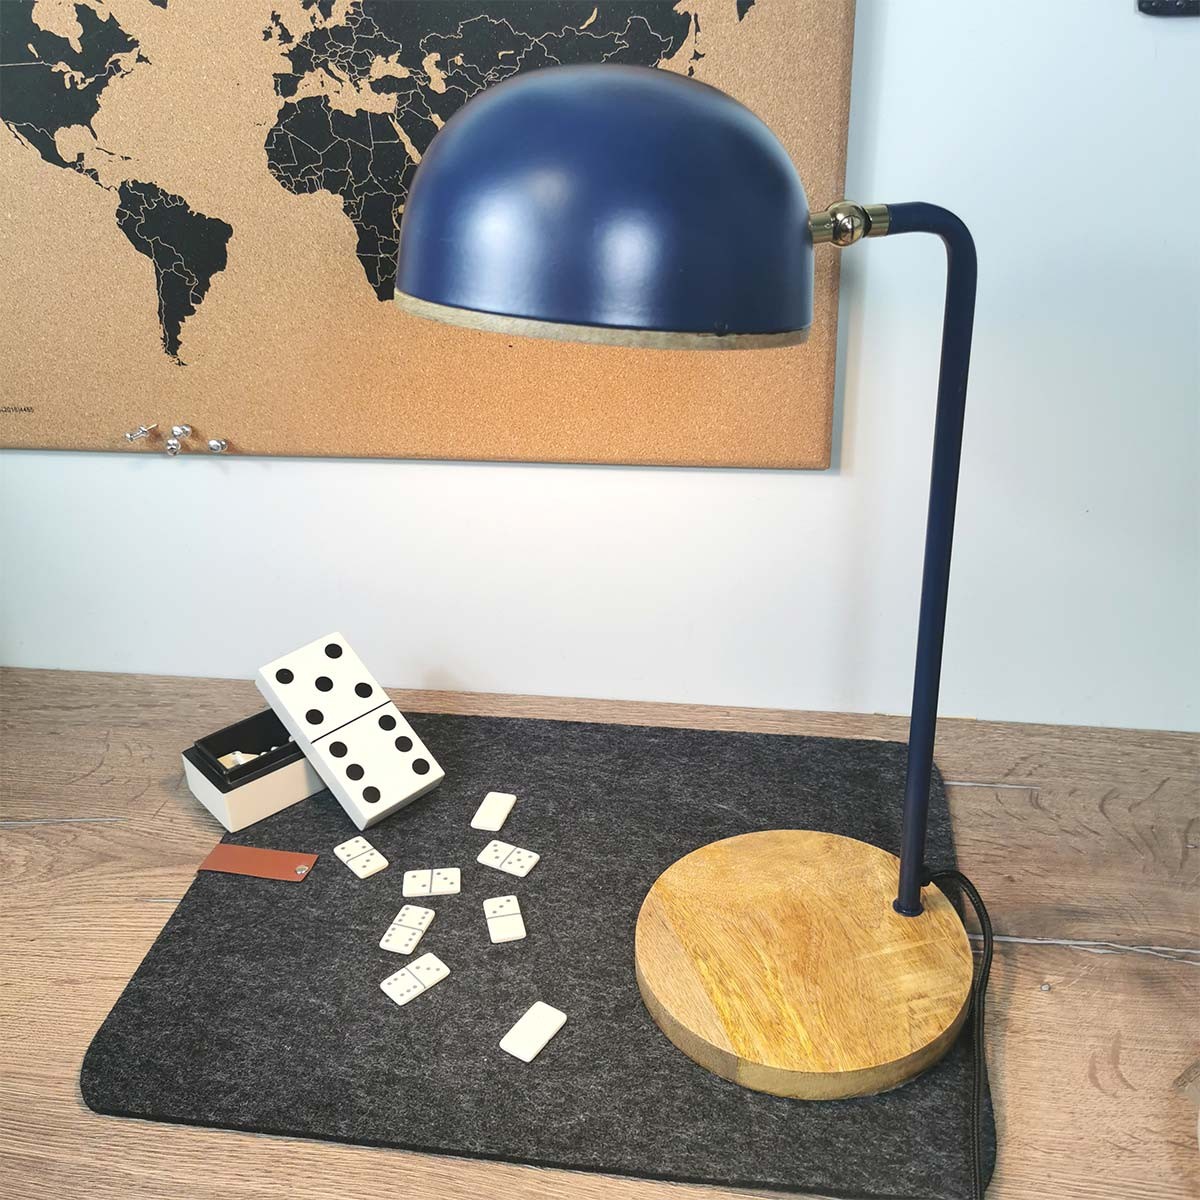 Petite lampe de table design industriel bois métal décoratif